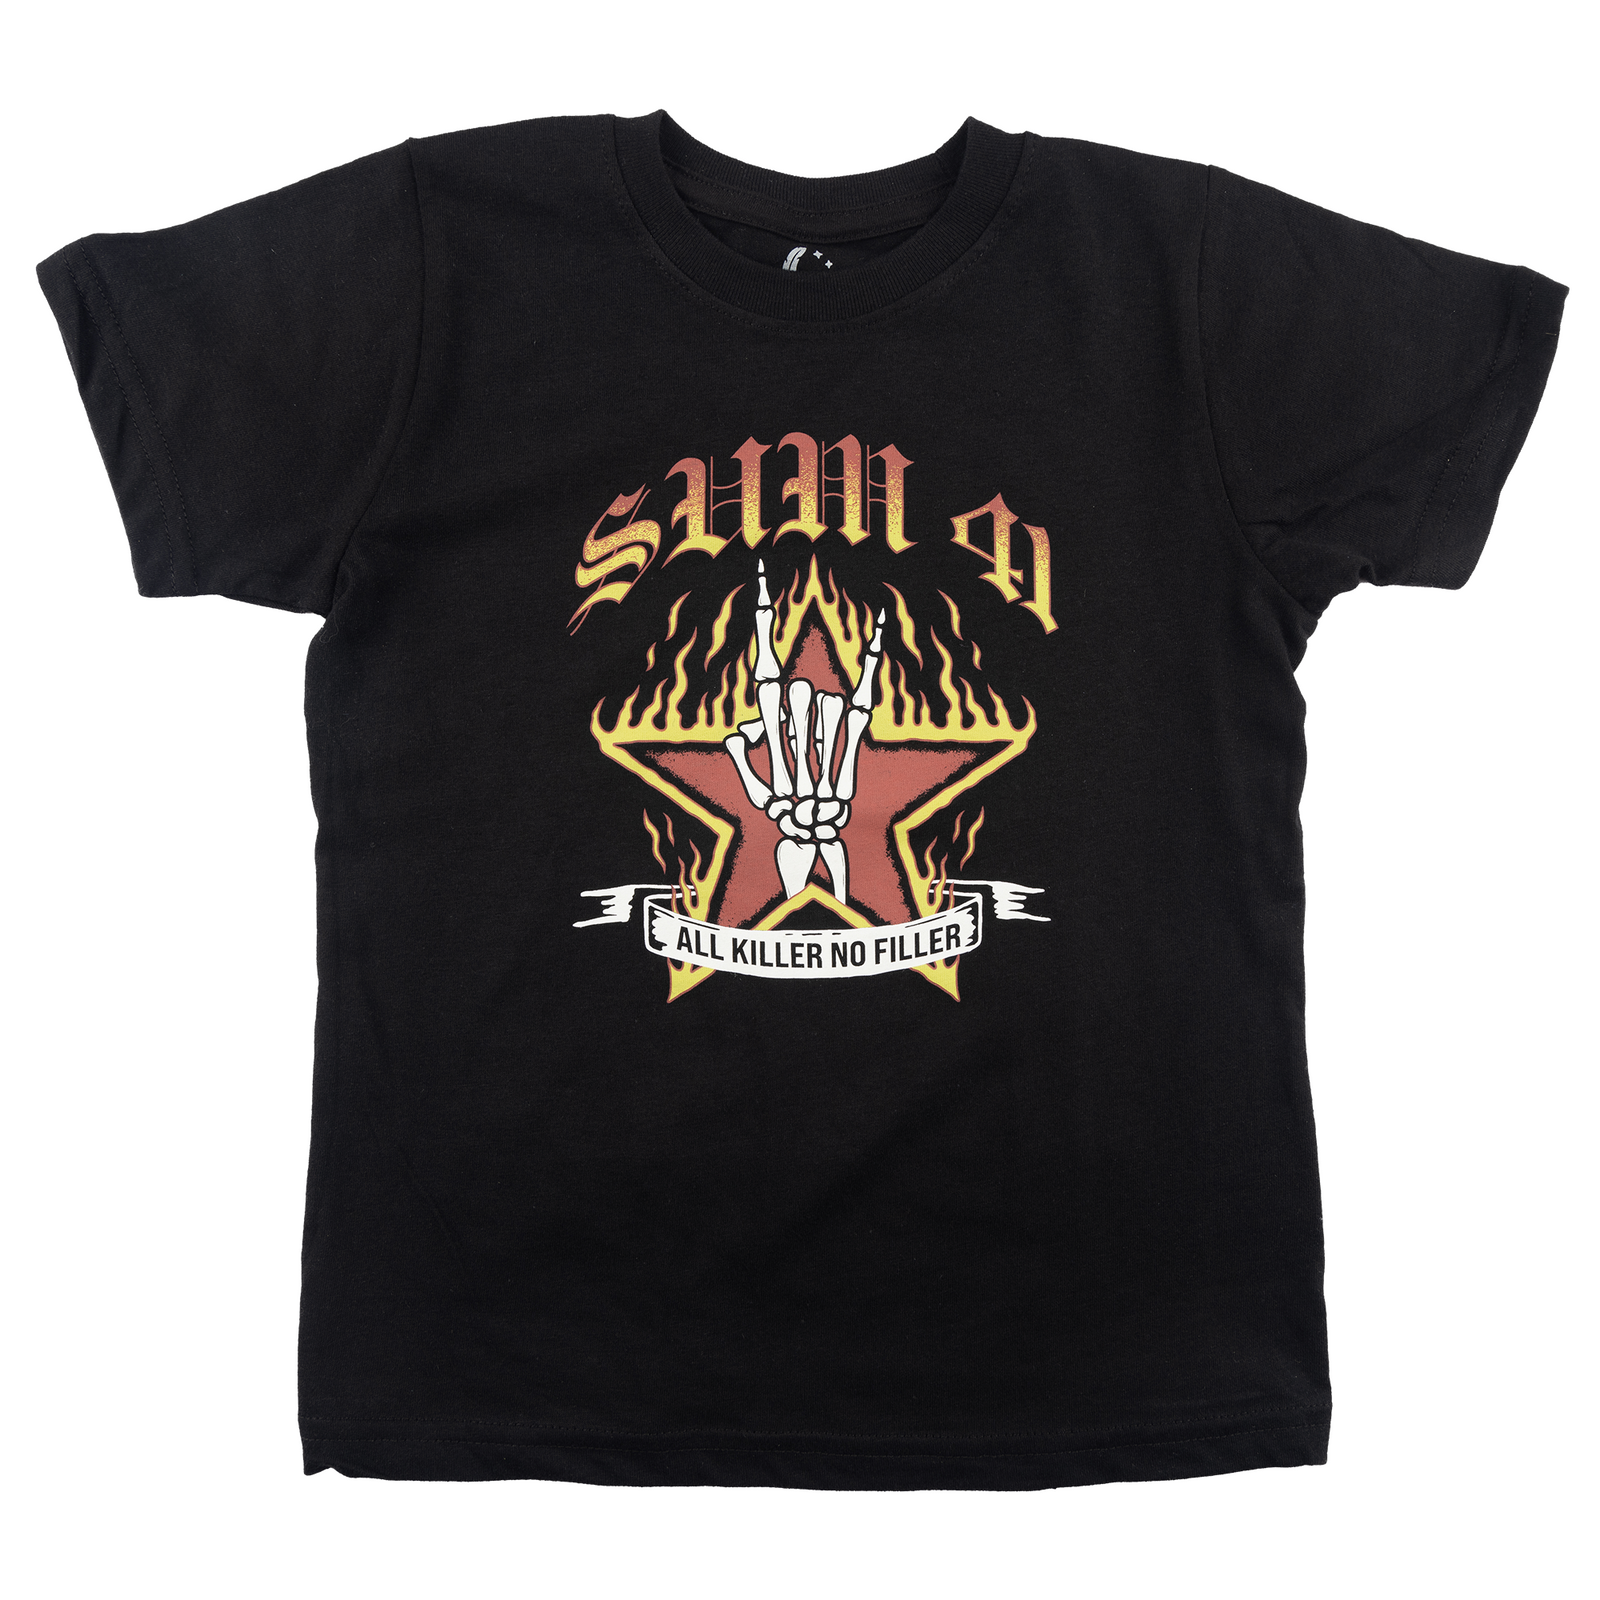 Sum 41 "All Killer No Filler" Toddler T-Shirt